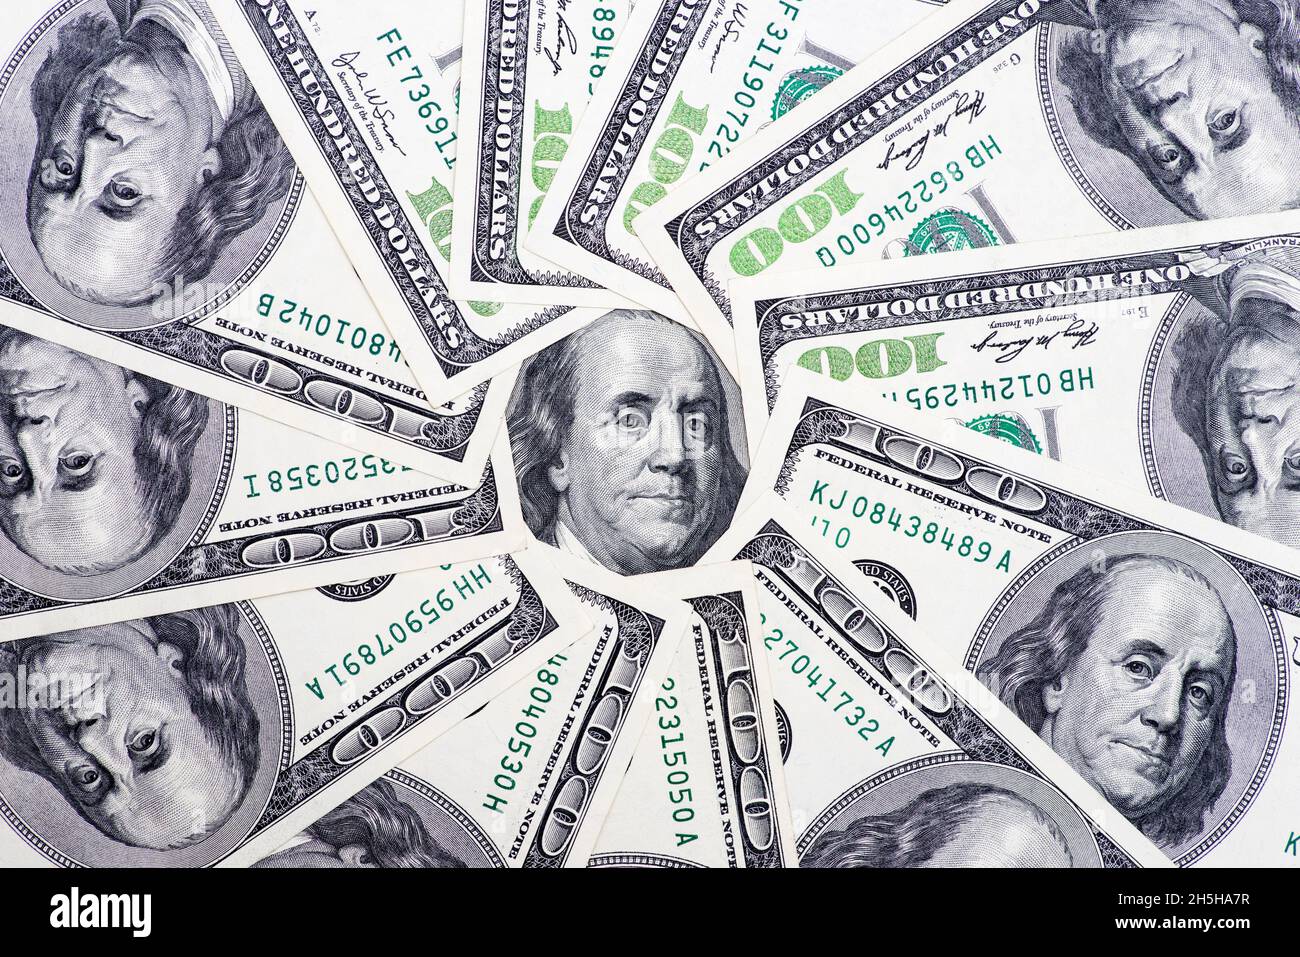 Un cercle de billets de 100 dollars avec un portrait de Franklin au centre.Fond monétaire Banque D'Images